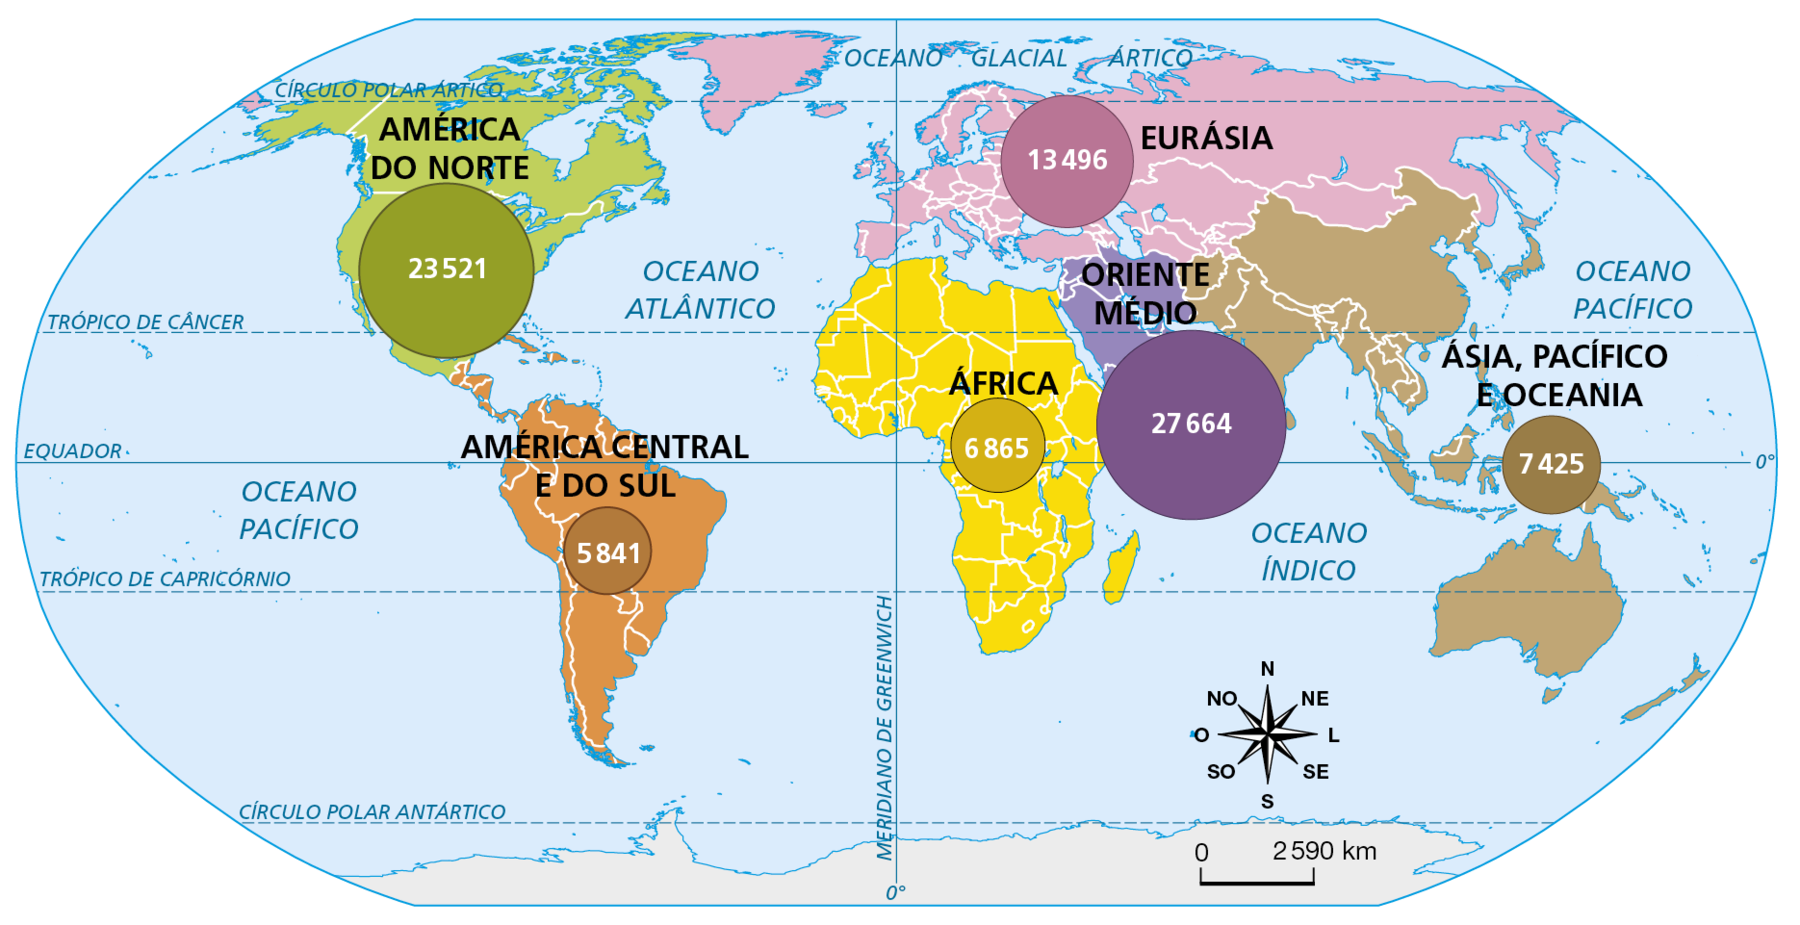 Mapa. Planisfério: produção de petróleo, em mil barris diários (2020). 
Planisfério representando a produção de petróleo mundial por continentais ou regiões do mundo, diferenciados por cores. A produção é medida por milhares de barris diários de petróleo e é indicada por meio de círculos proporcionais de acordo com os valores correspondentes. 
América do Norte (verde): 23.521 barris de petróleo por dia. 
América Central e do Sul (laranja): 5.841 barris de petróleo por dia. 
África (amarelo): 6.865 barris de petróleo por dia.
Oriente Médio (roxo): 27.664 barris de petróleo por dia. 
Eurásia (rosa): 13.496 barris de petróleo por dia. 
Ásia, Pacífico e Oceania (marrom): 7.425 barris de petróleo por dia. 
Na parte inferior direita, rosa dos ventos e escala de 0 a 2.590 quilômetros.